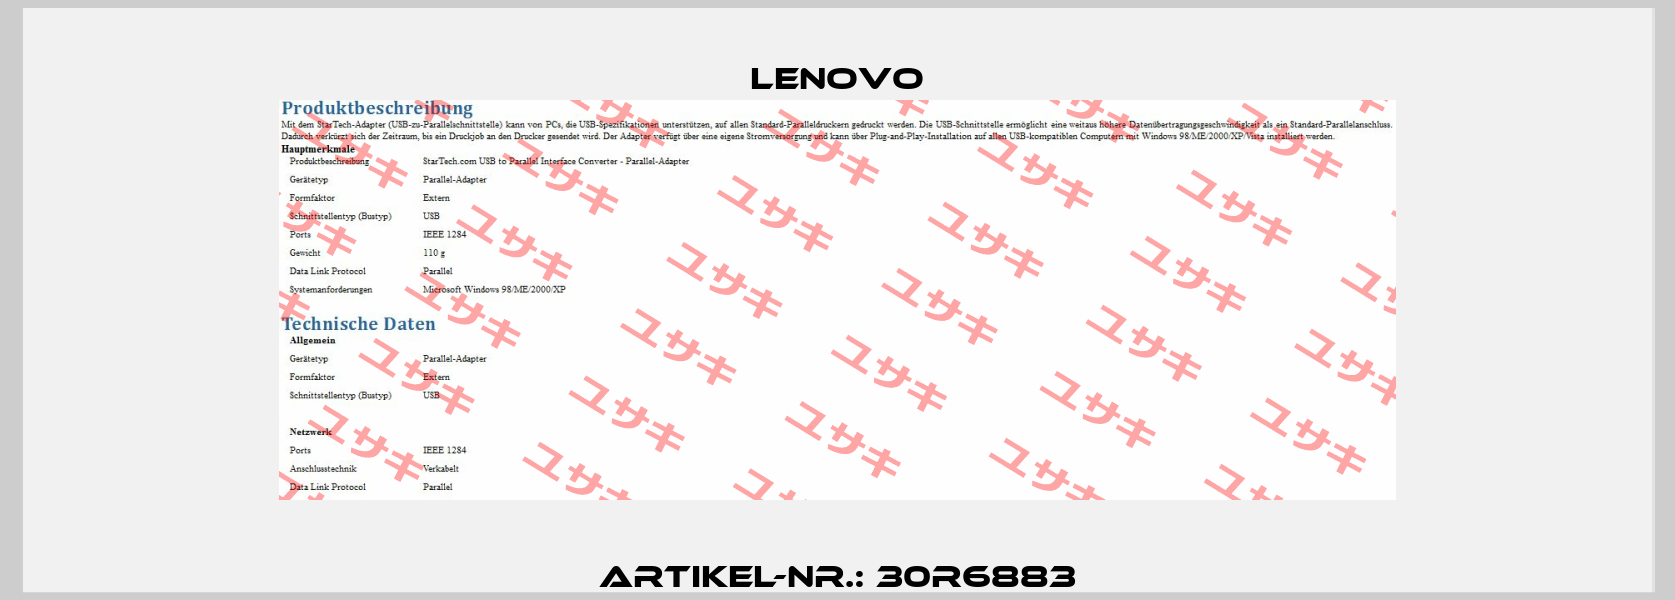 Artikel-Nr.: 30R6883 Lenovo